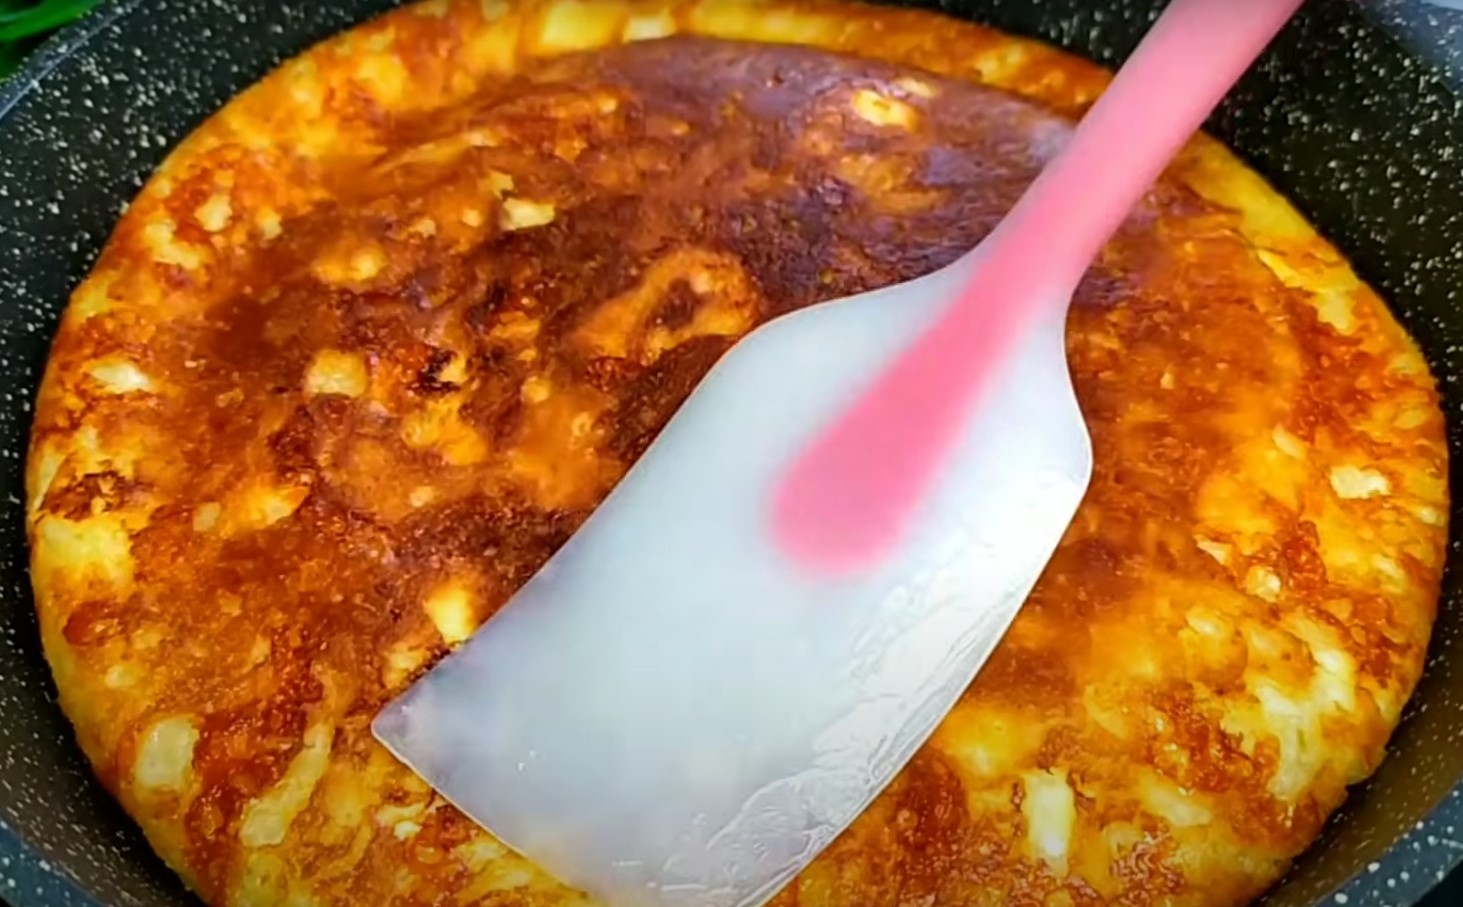 Ленивые хачапури с сыром на сковороде (без теста)